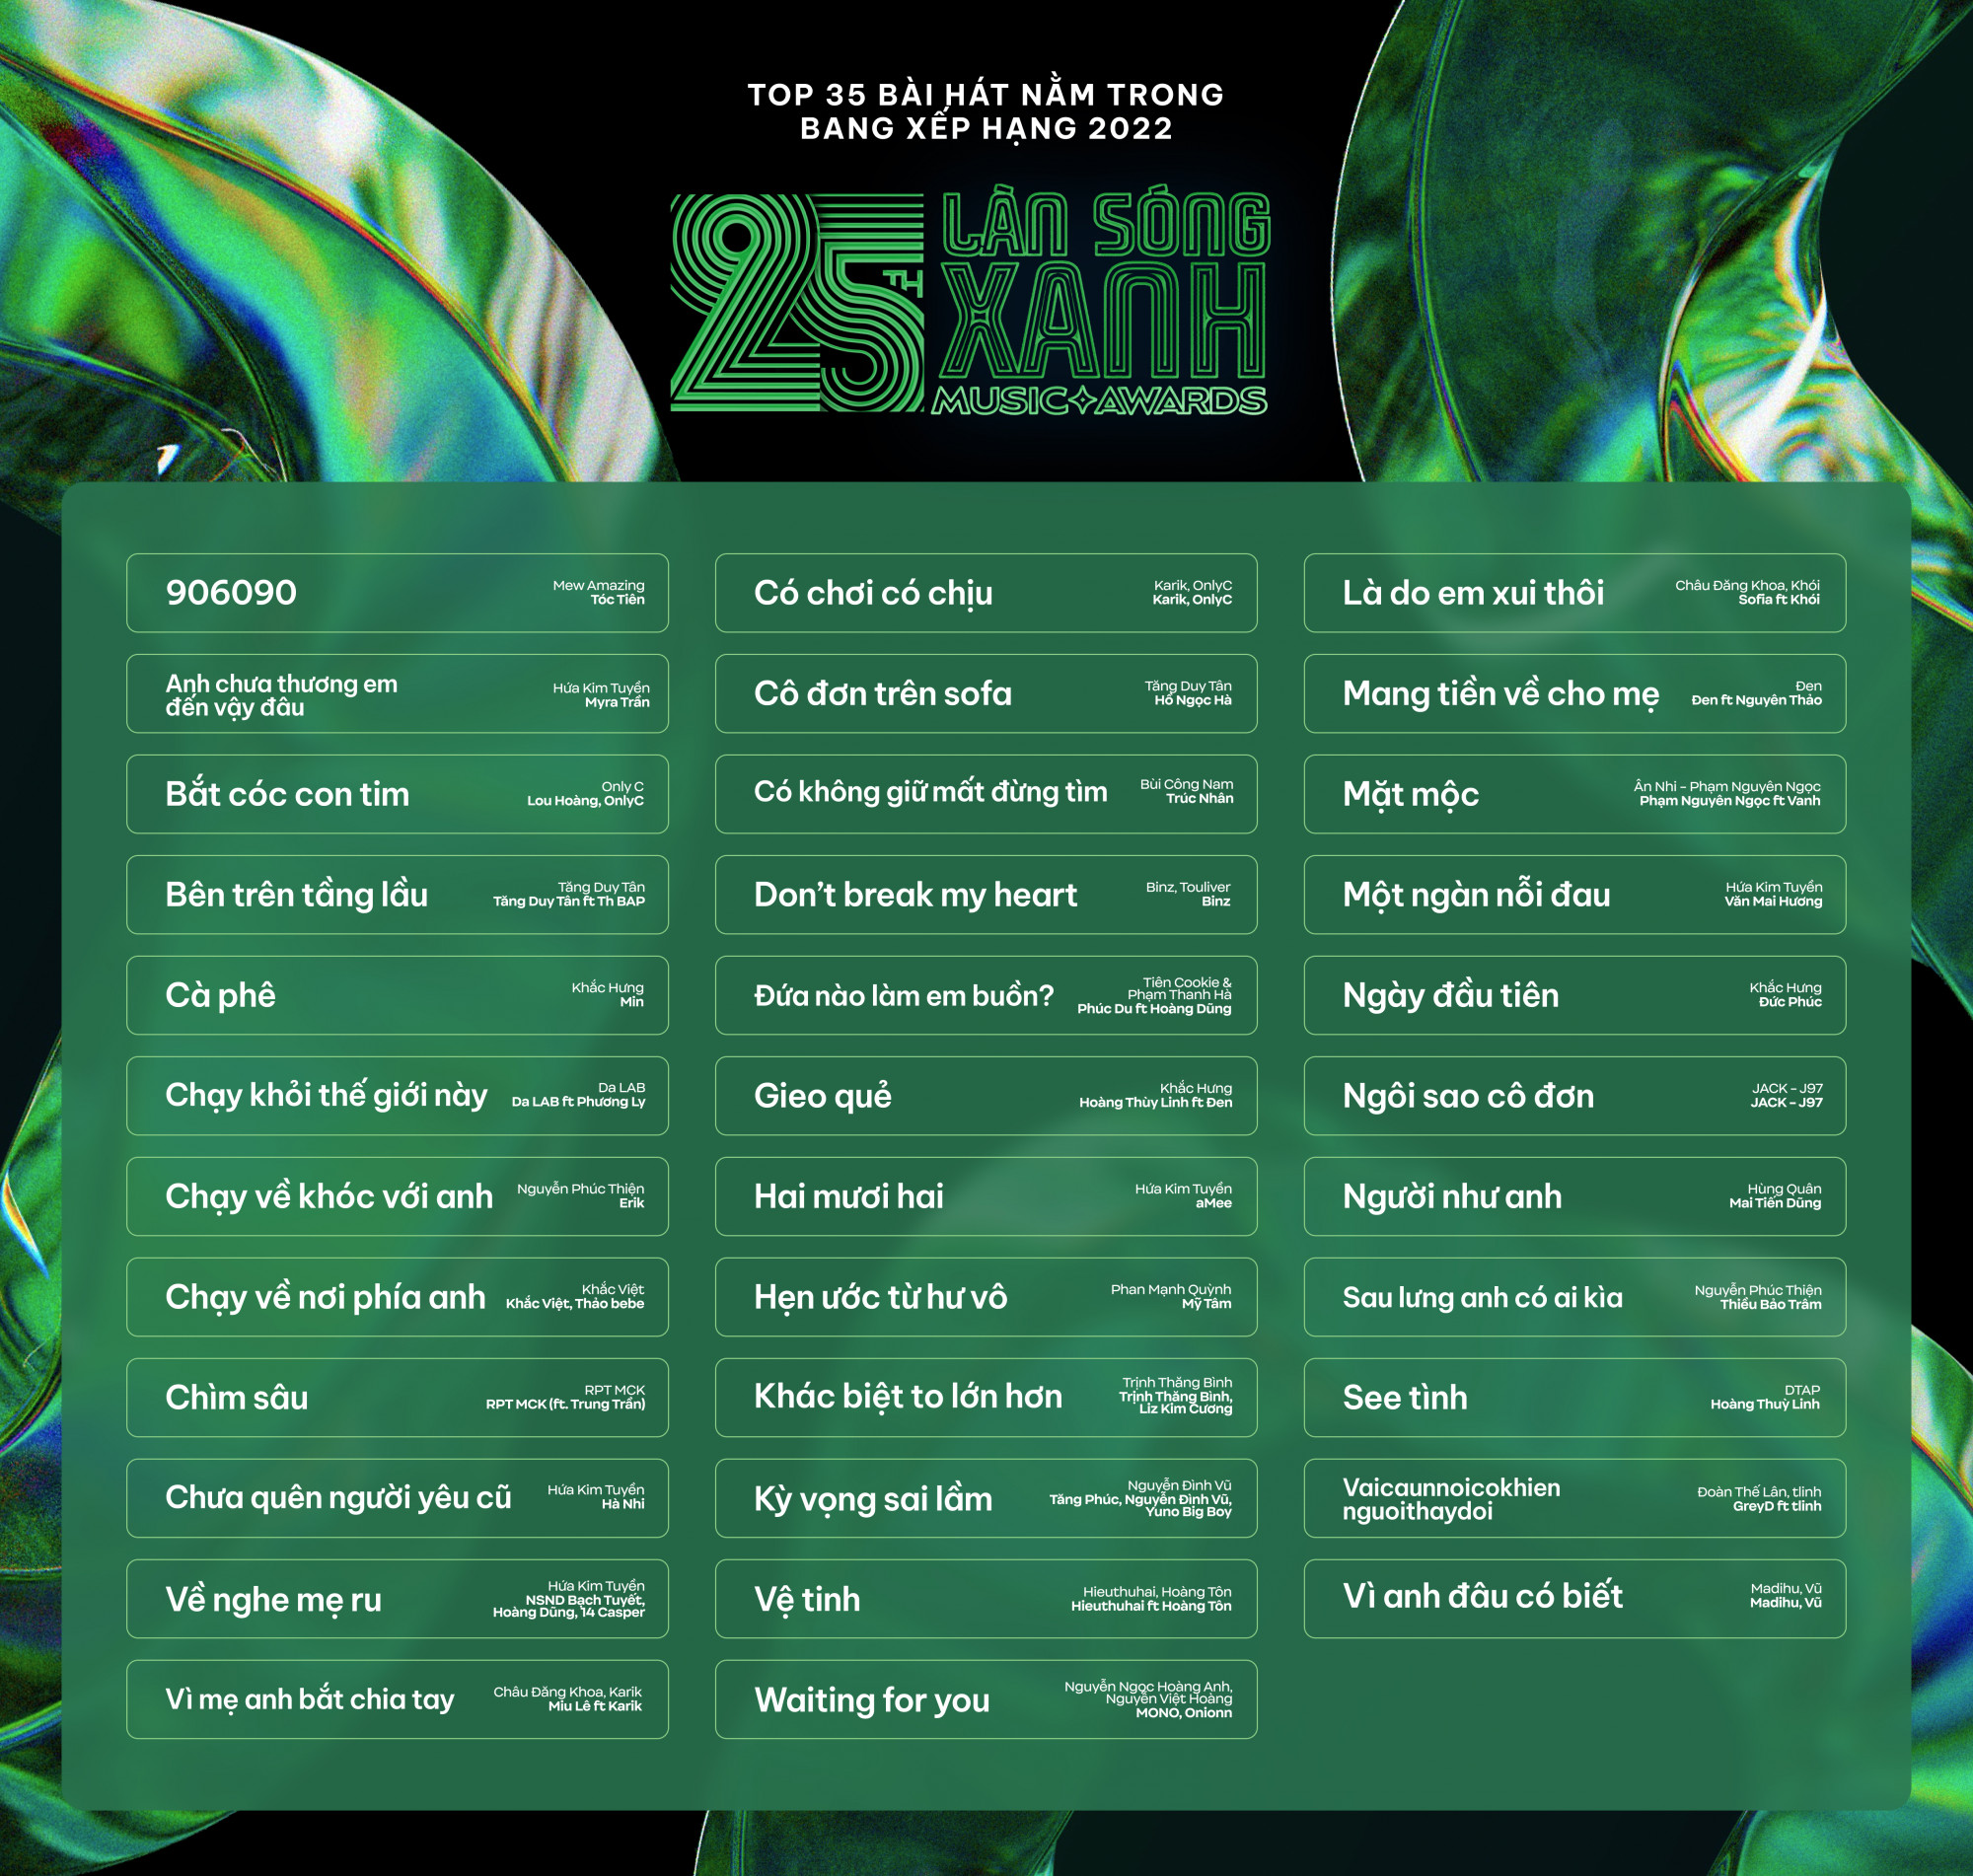 35 bài hát nằm trong BXH Làn sóng xanh 2022